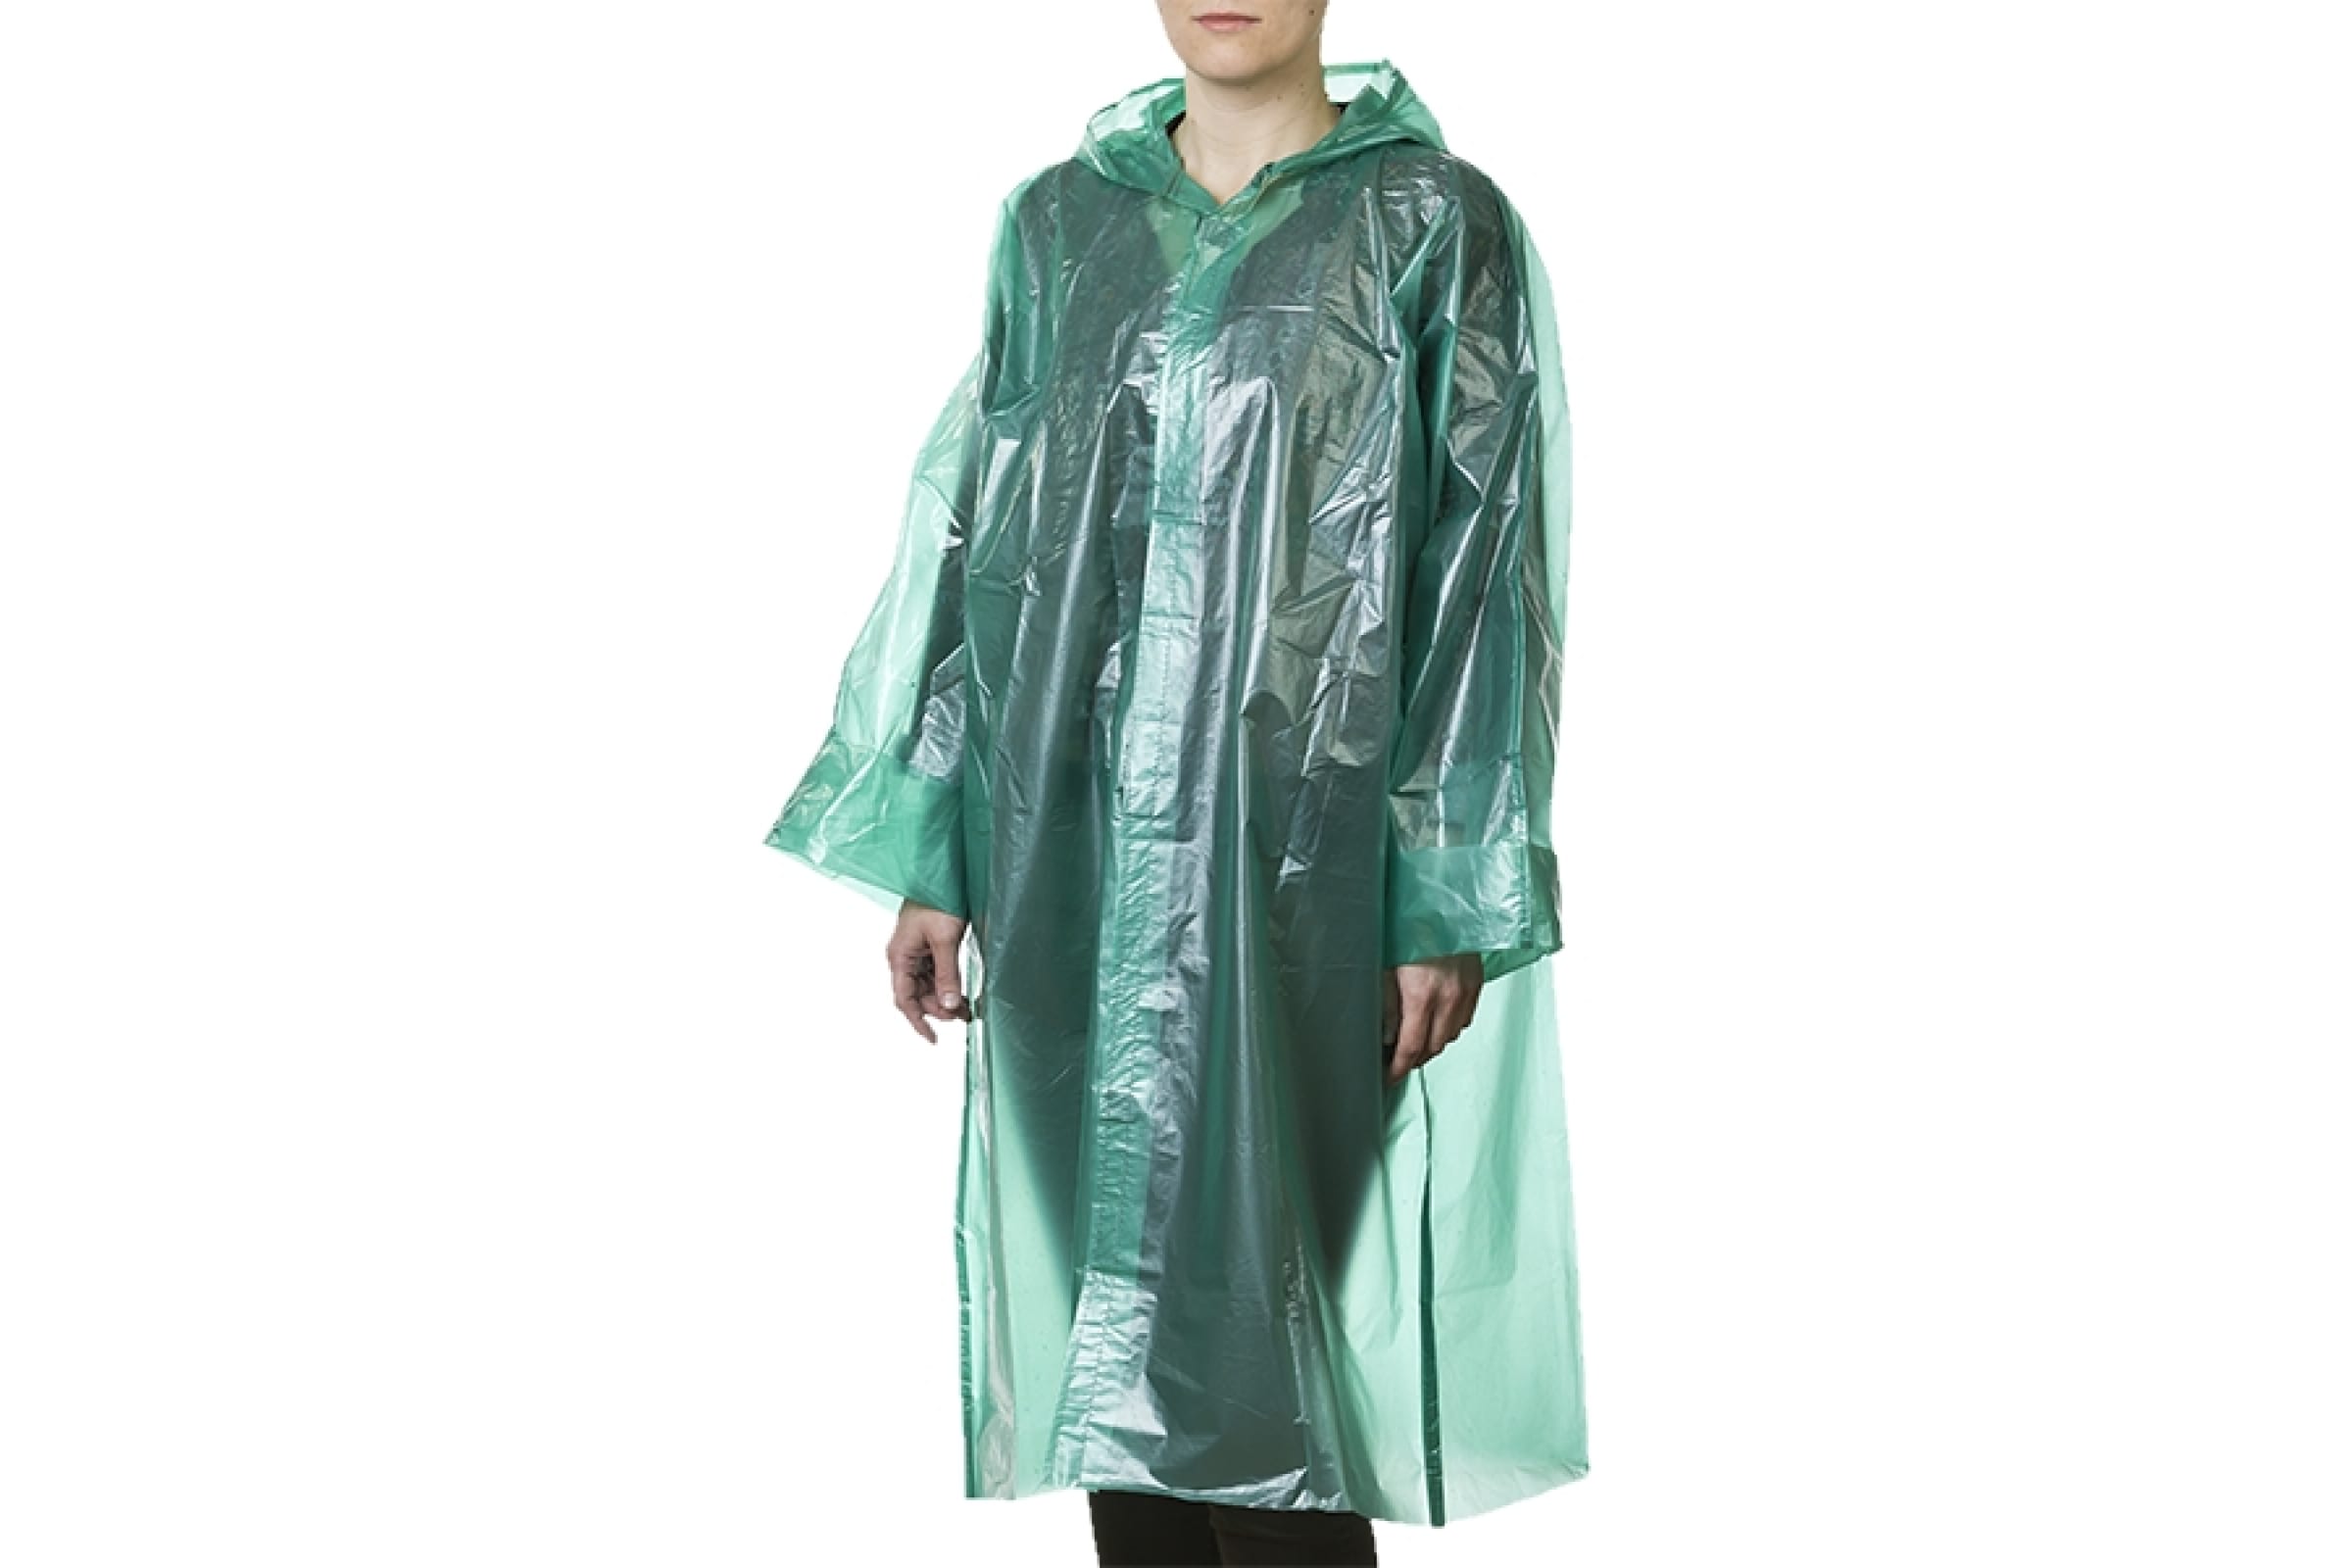 Плащ-дождевик STAYER 11610, полиэтиленовый, зеленый цвет, универсальный размер S-XL